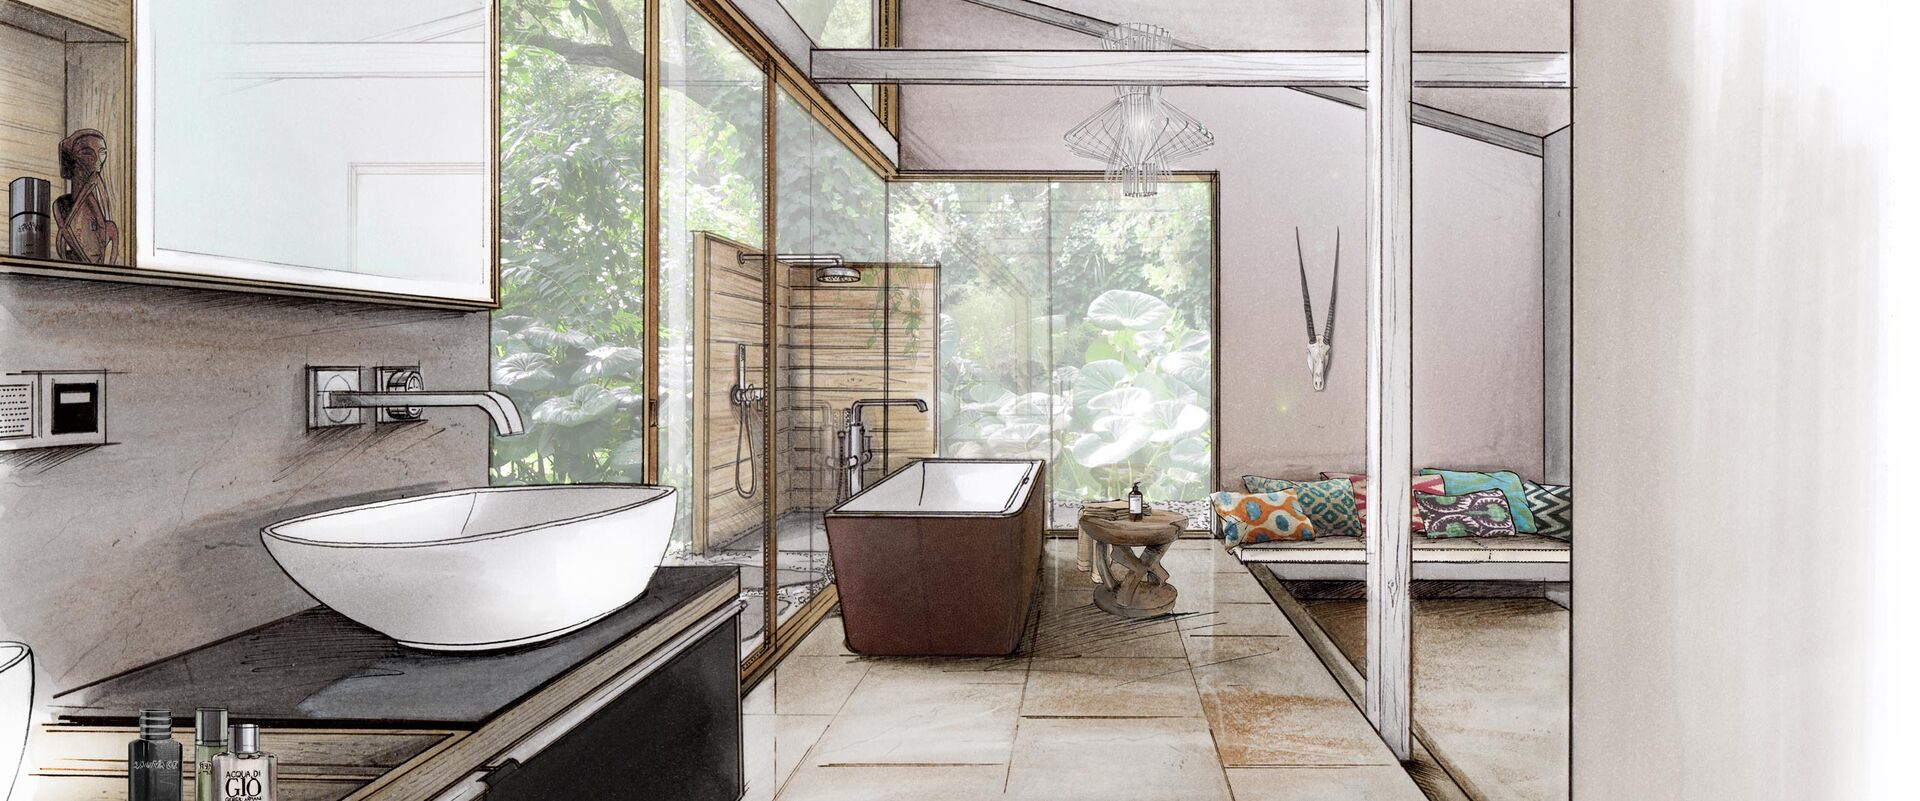 Badplanungszeichnung in afrikanischem Stil mit Zebrafell, freistehender Badewanne und Waschplatz mit Aufsatzwaschbecken.